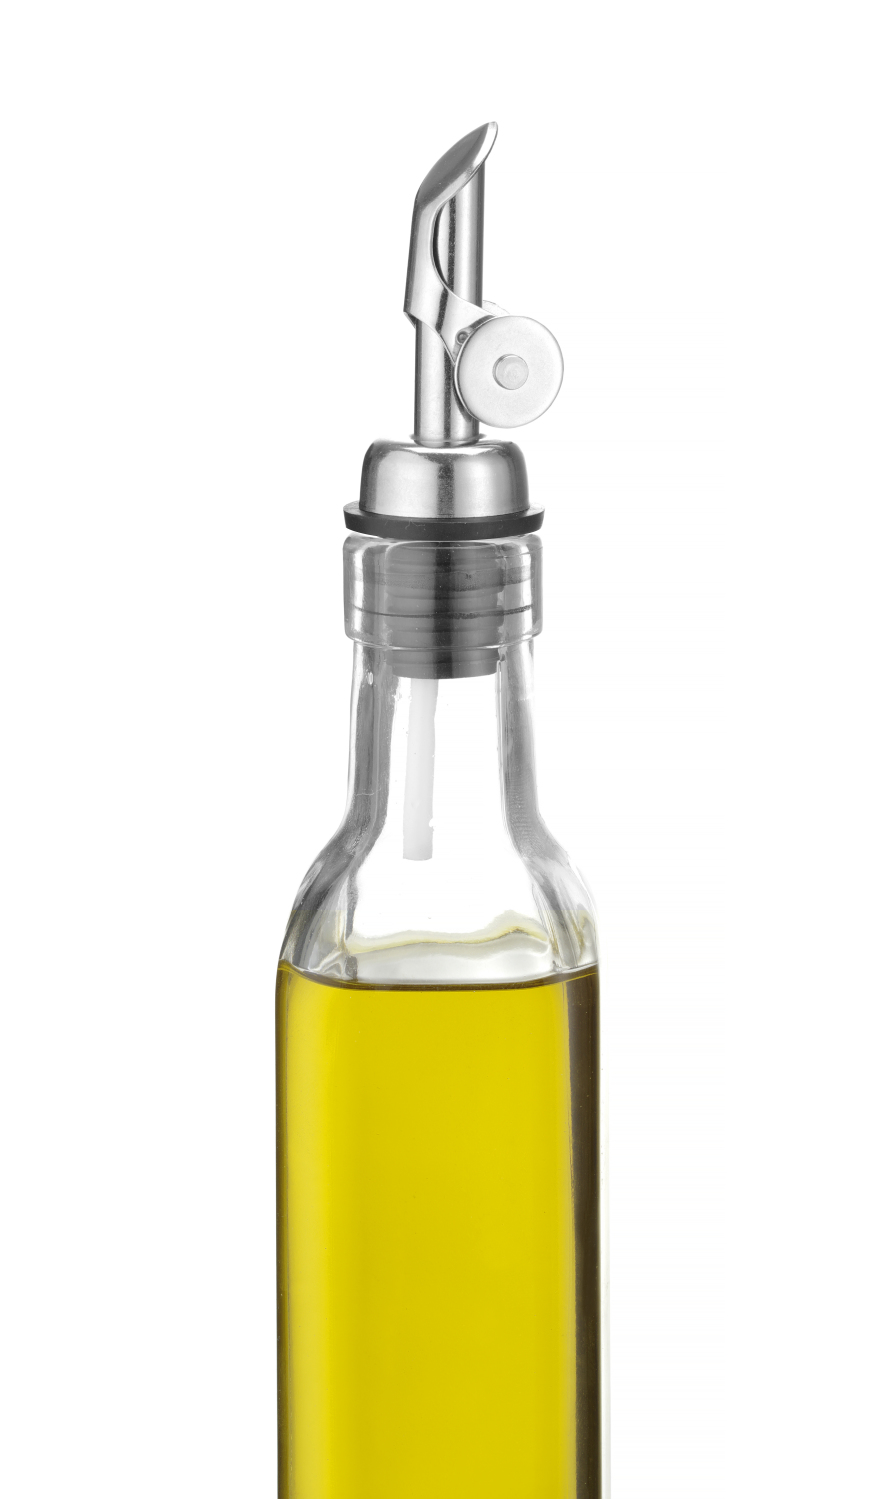 Bec verseur à écoulement libre pour l'huile d'olive - 3 pièces